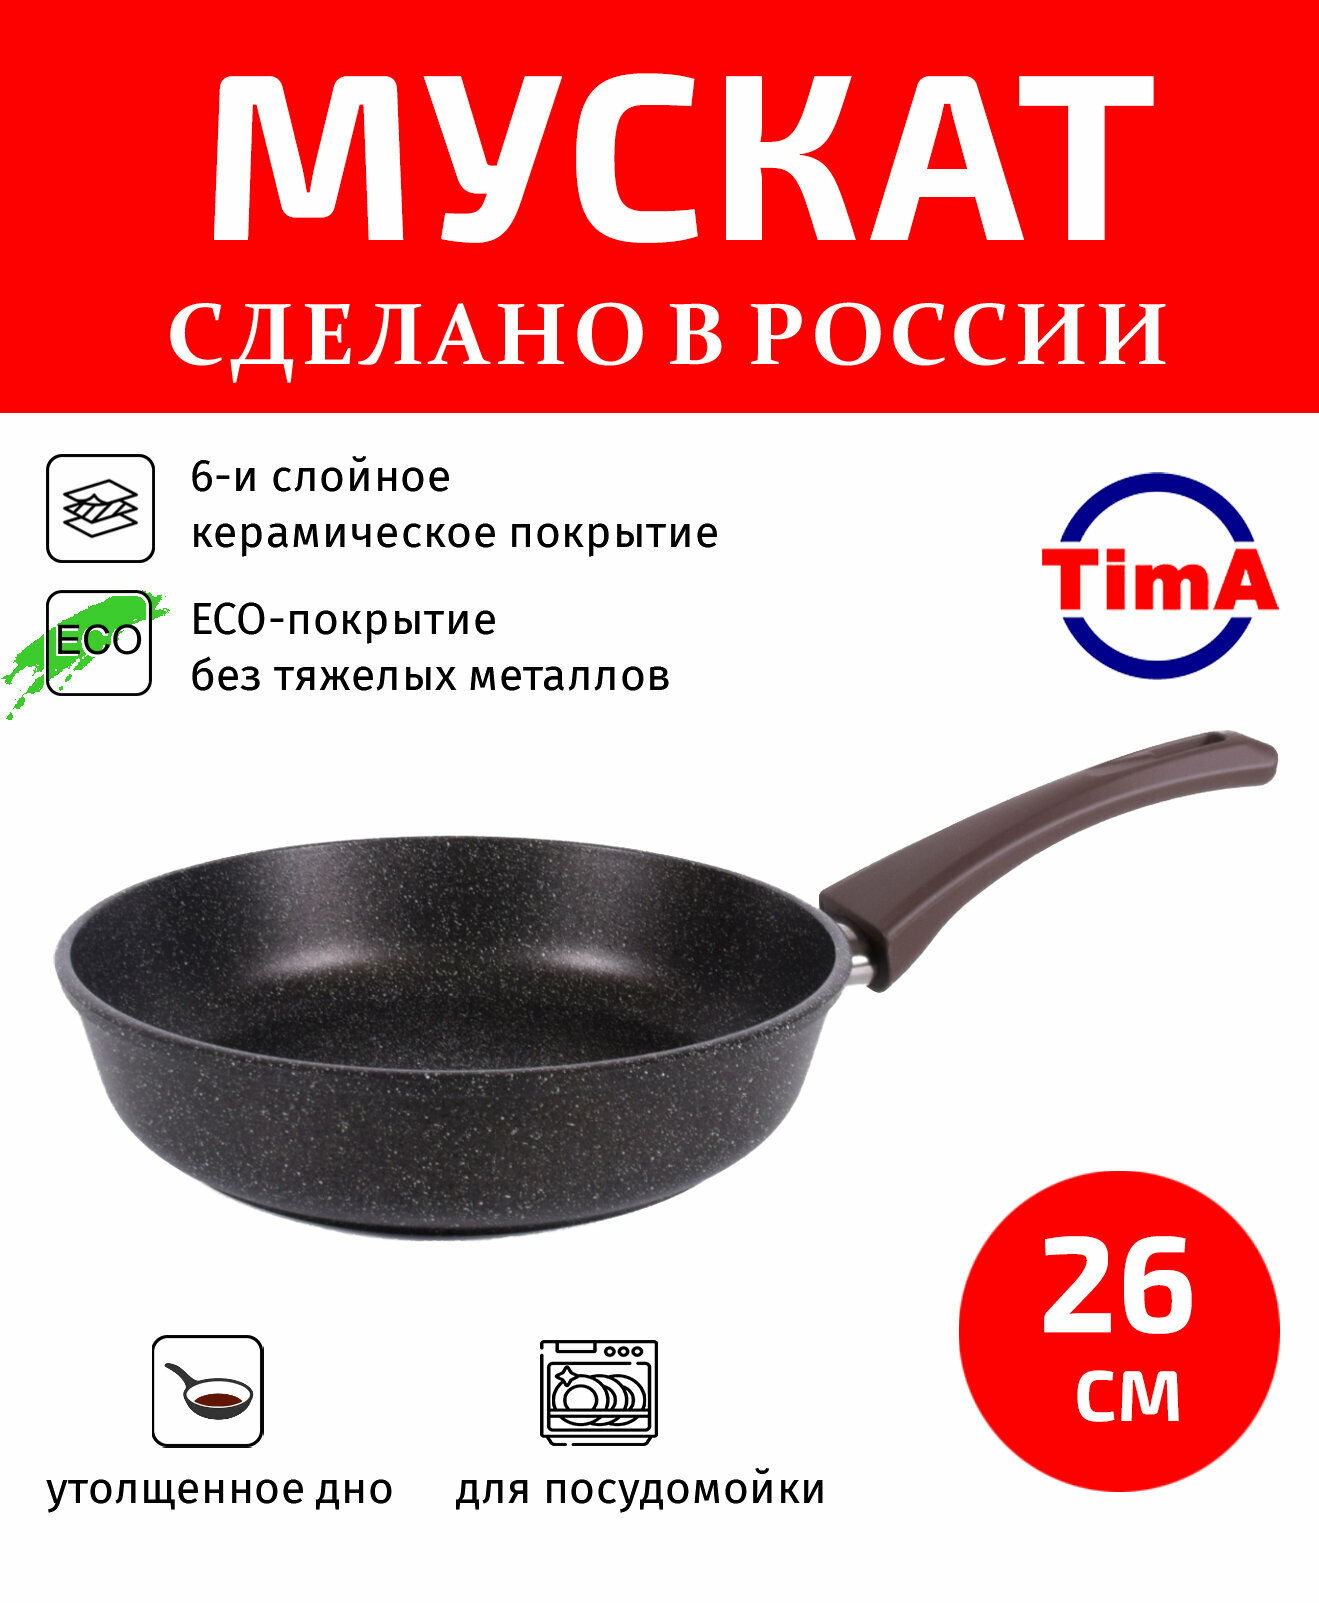 Сковорода 24см TIMA Мускат керамическое покрытие с ручкой Soft-touch Россия